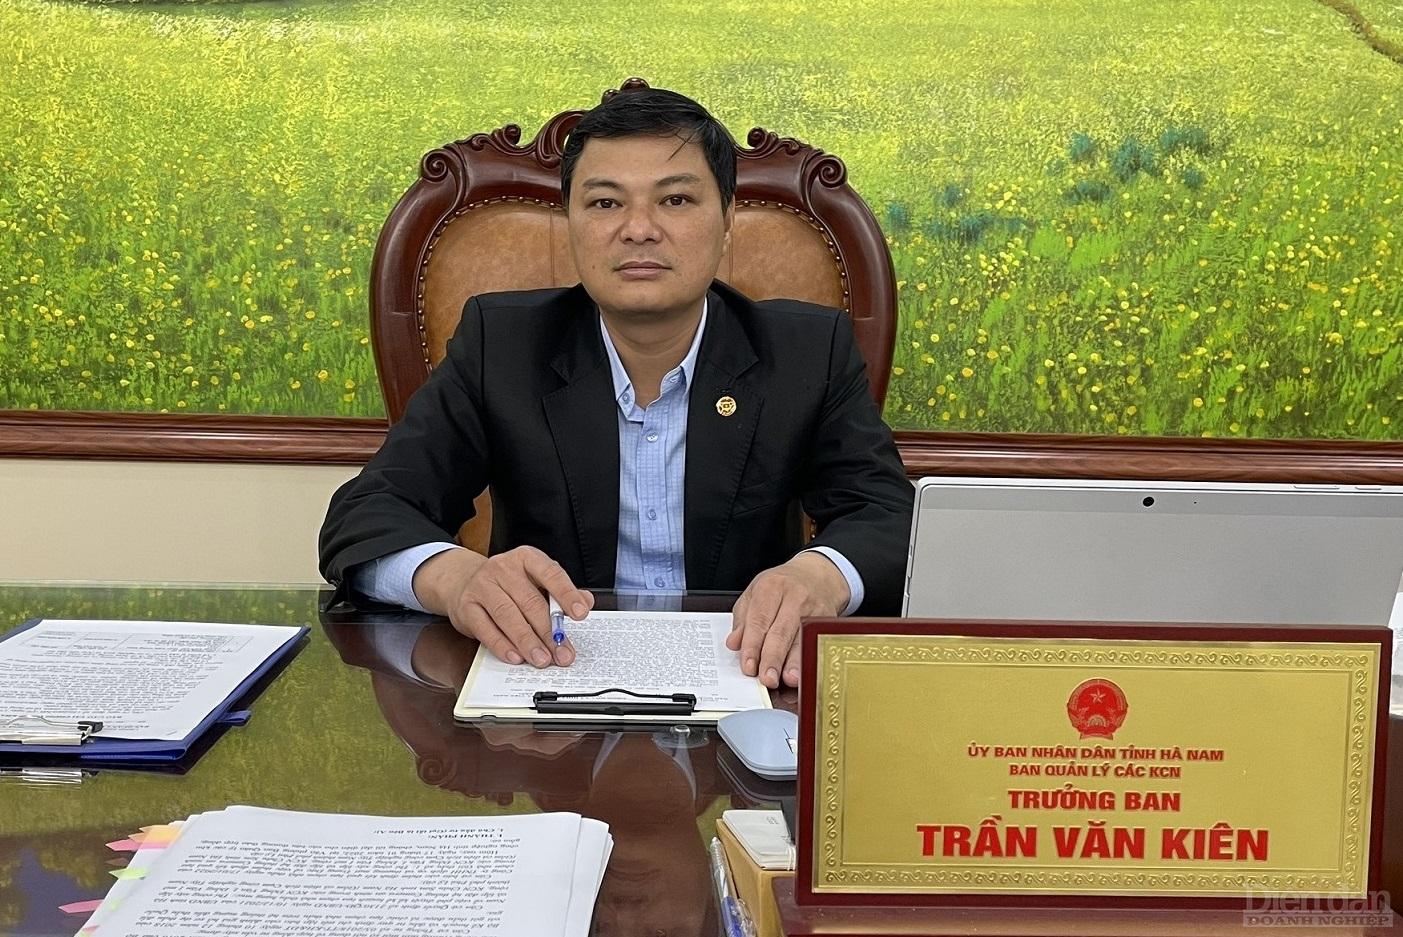 Ông Trần Văn Kiên, Trưởng ban BQL các KCN tỉnh Hà Nam